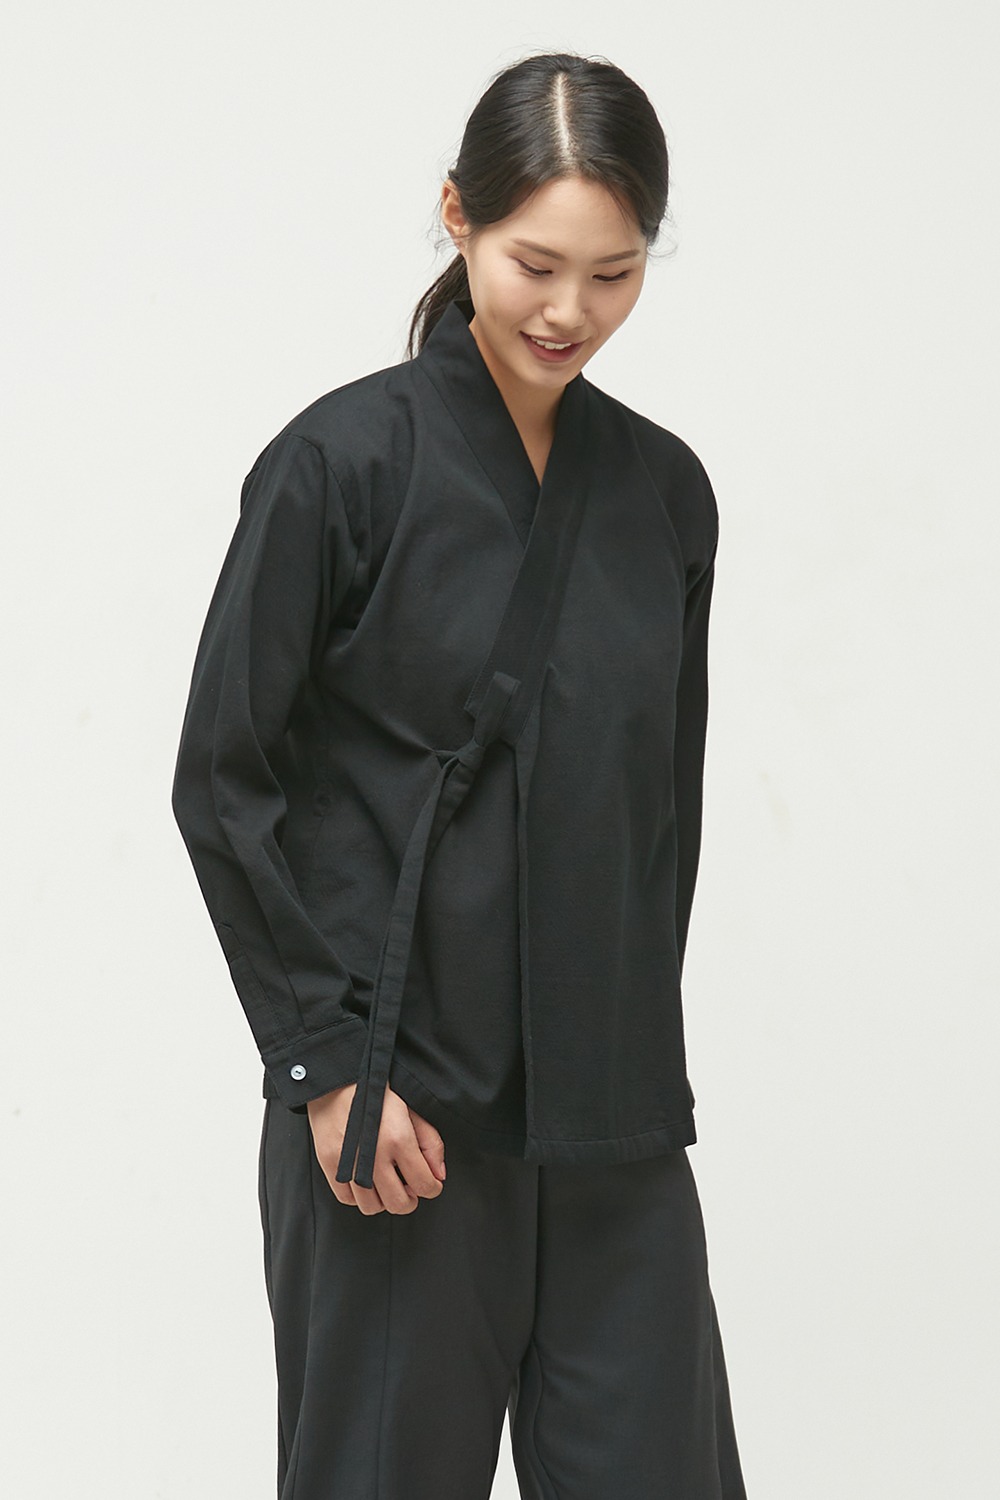 도톰 직령 셔츠 저고리 [블랙]한복셔츠 한복저고리 한복상의